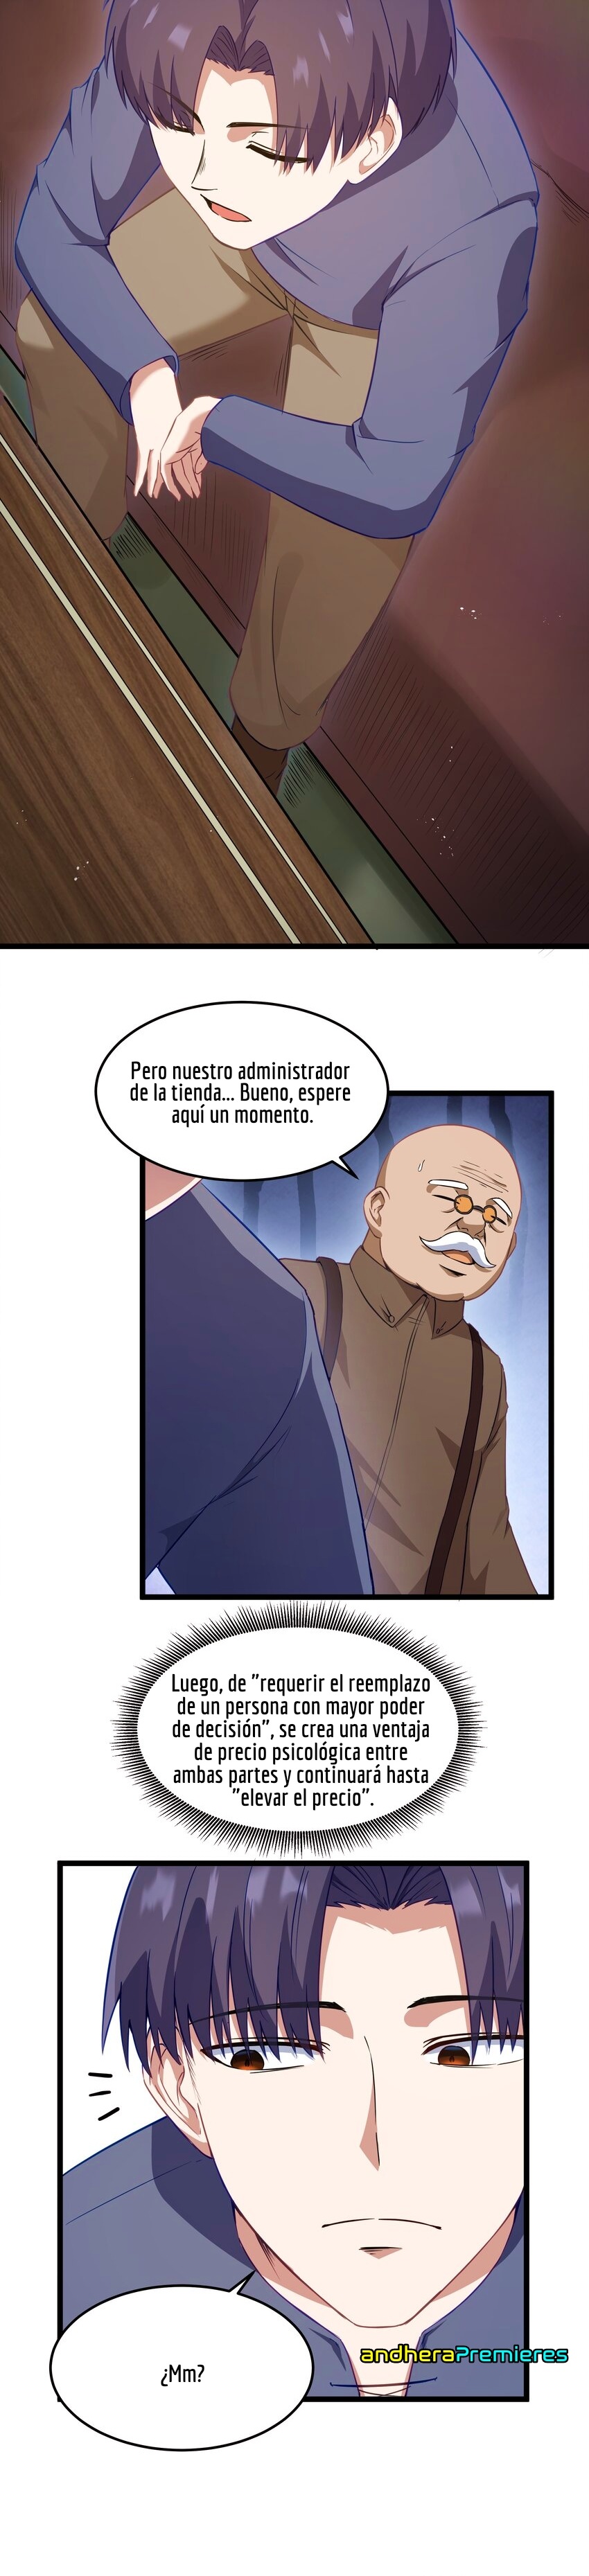 Manga El Héroe de la Avaricia Chapter 2 image number 20